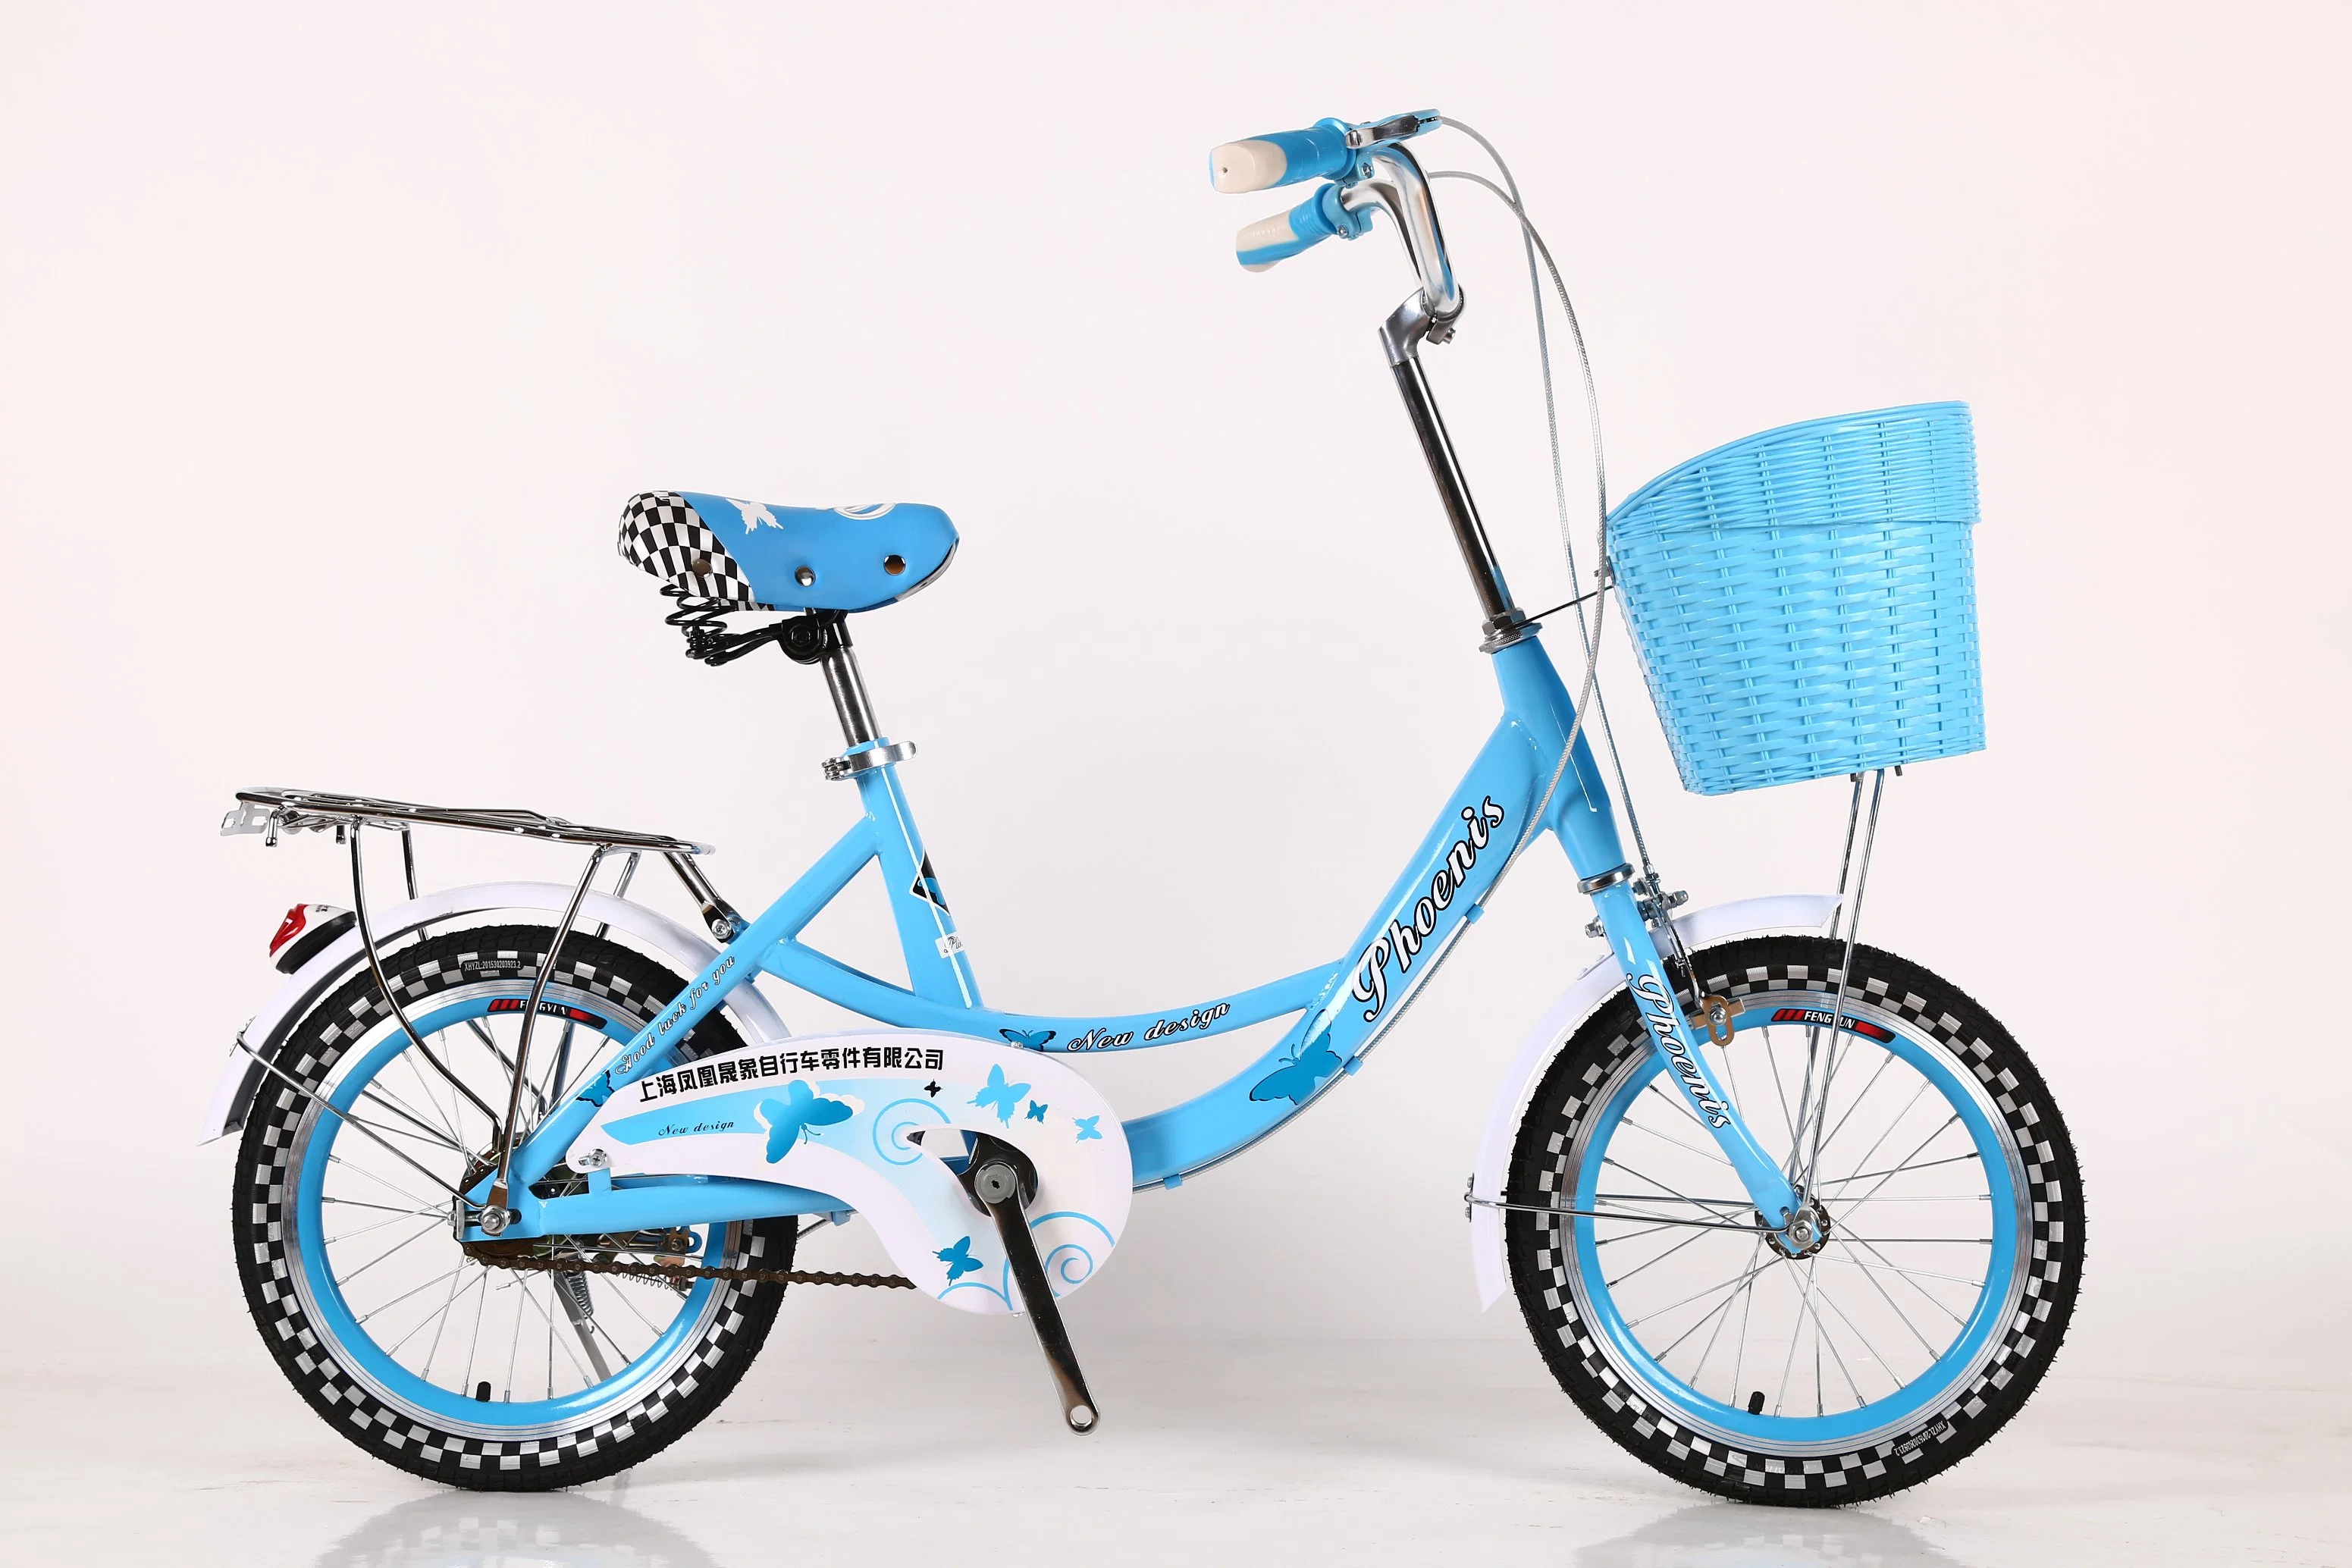 2018 El nuevo diseño bueno Dirt Bike/ venta de fábrica barata Kids suciedad bicicletas para la venta/ Diseño especialmente las cuatro ruedas de bicicleta Bebé